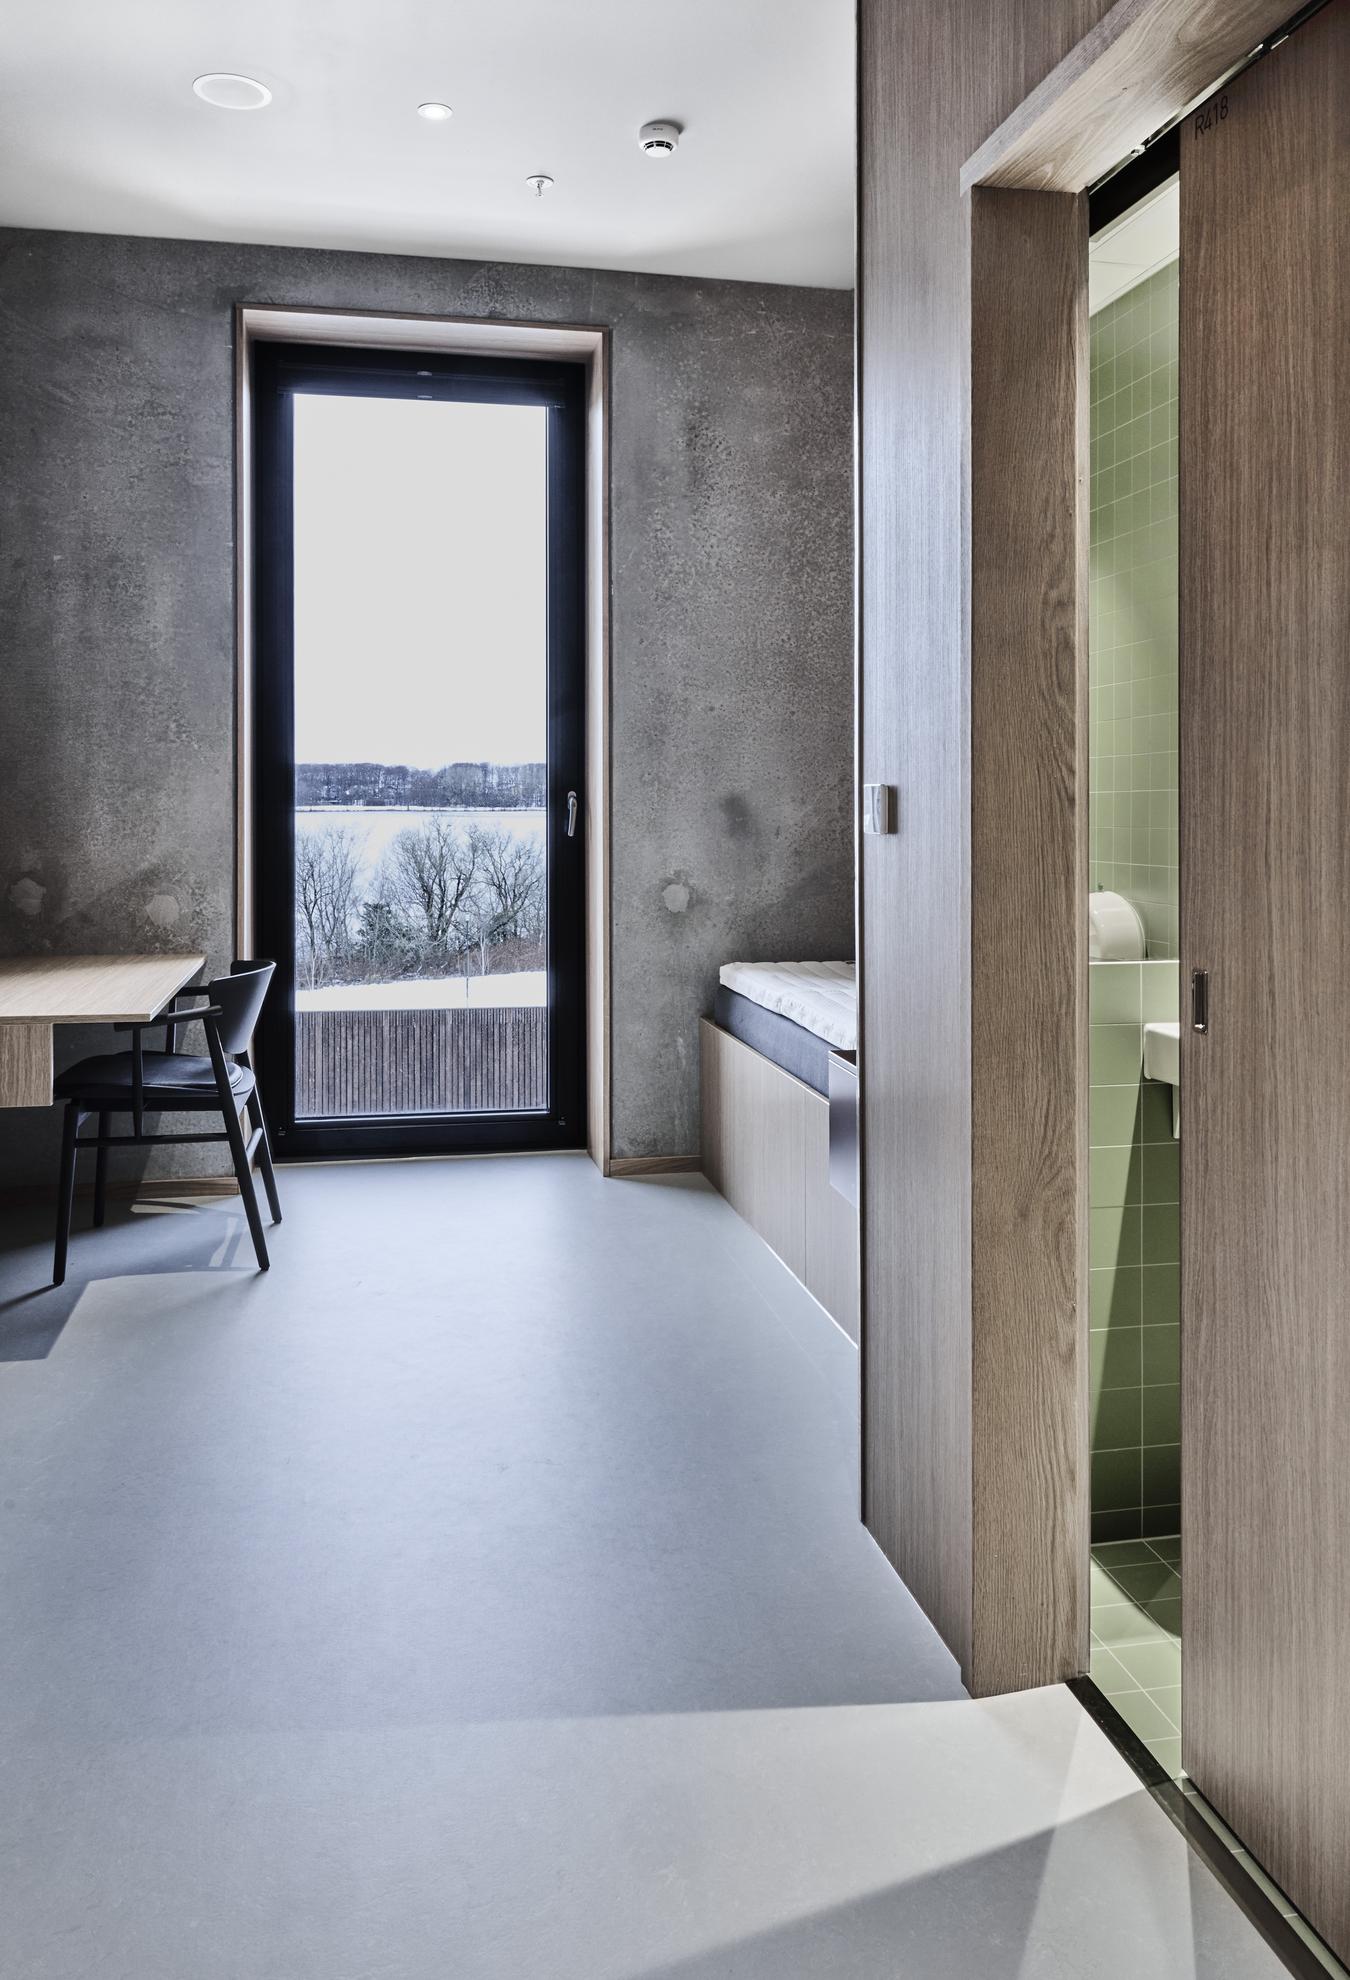 Sovrum och badrum med inredning i betong, trä och grönt kakel. Foto